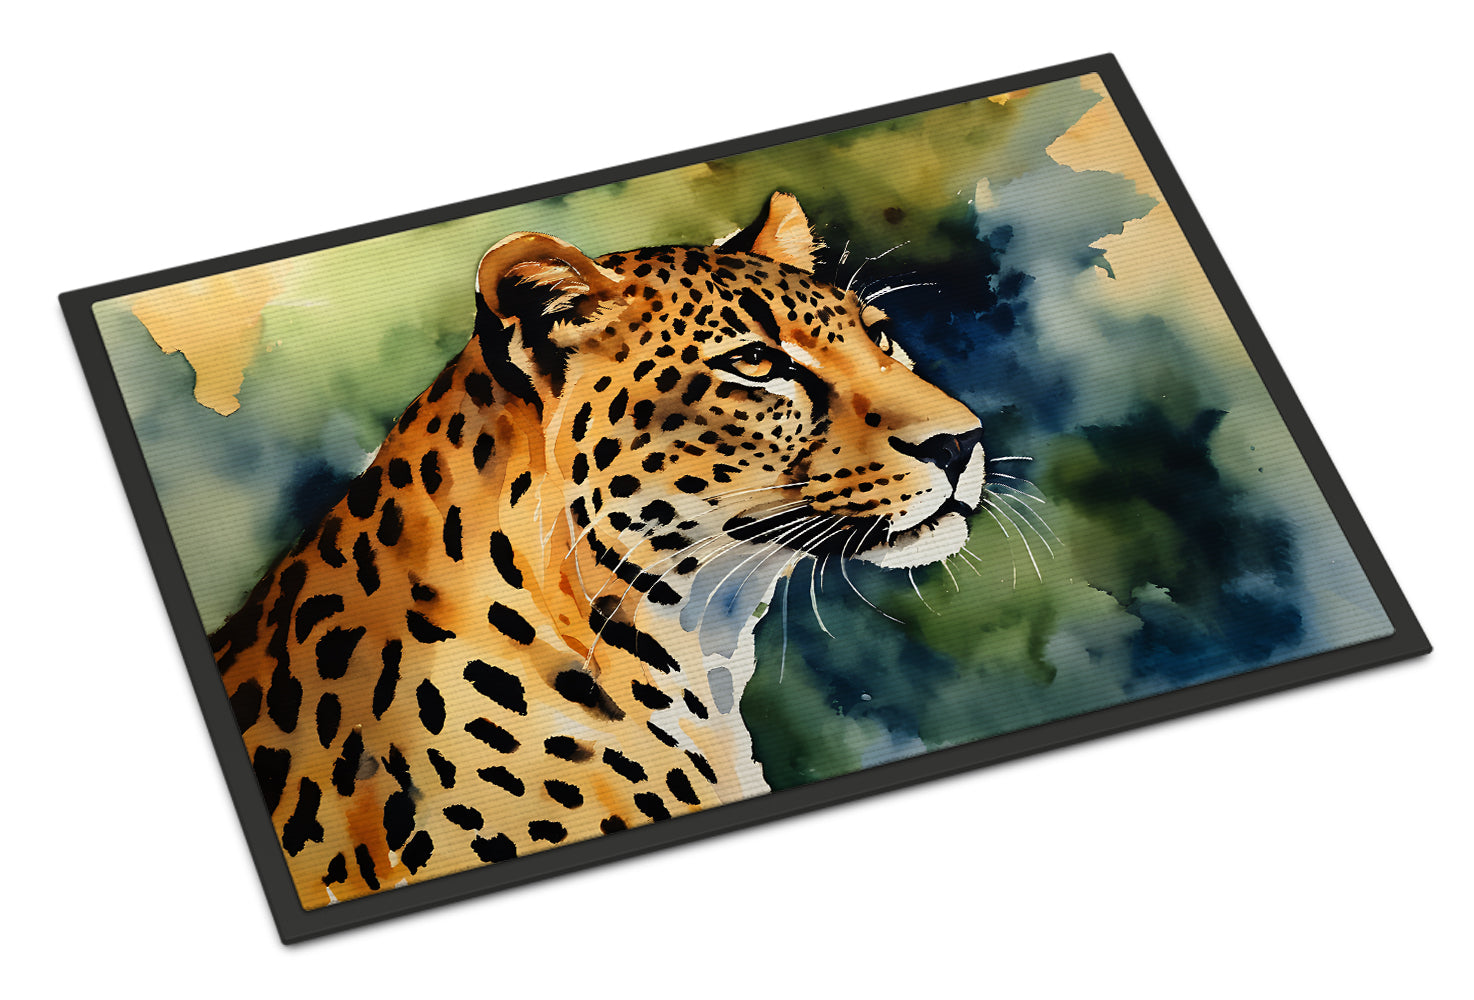 Buy this Leopard Doormat